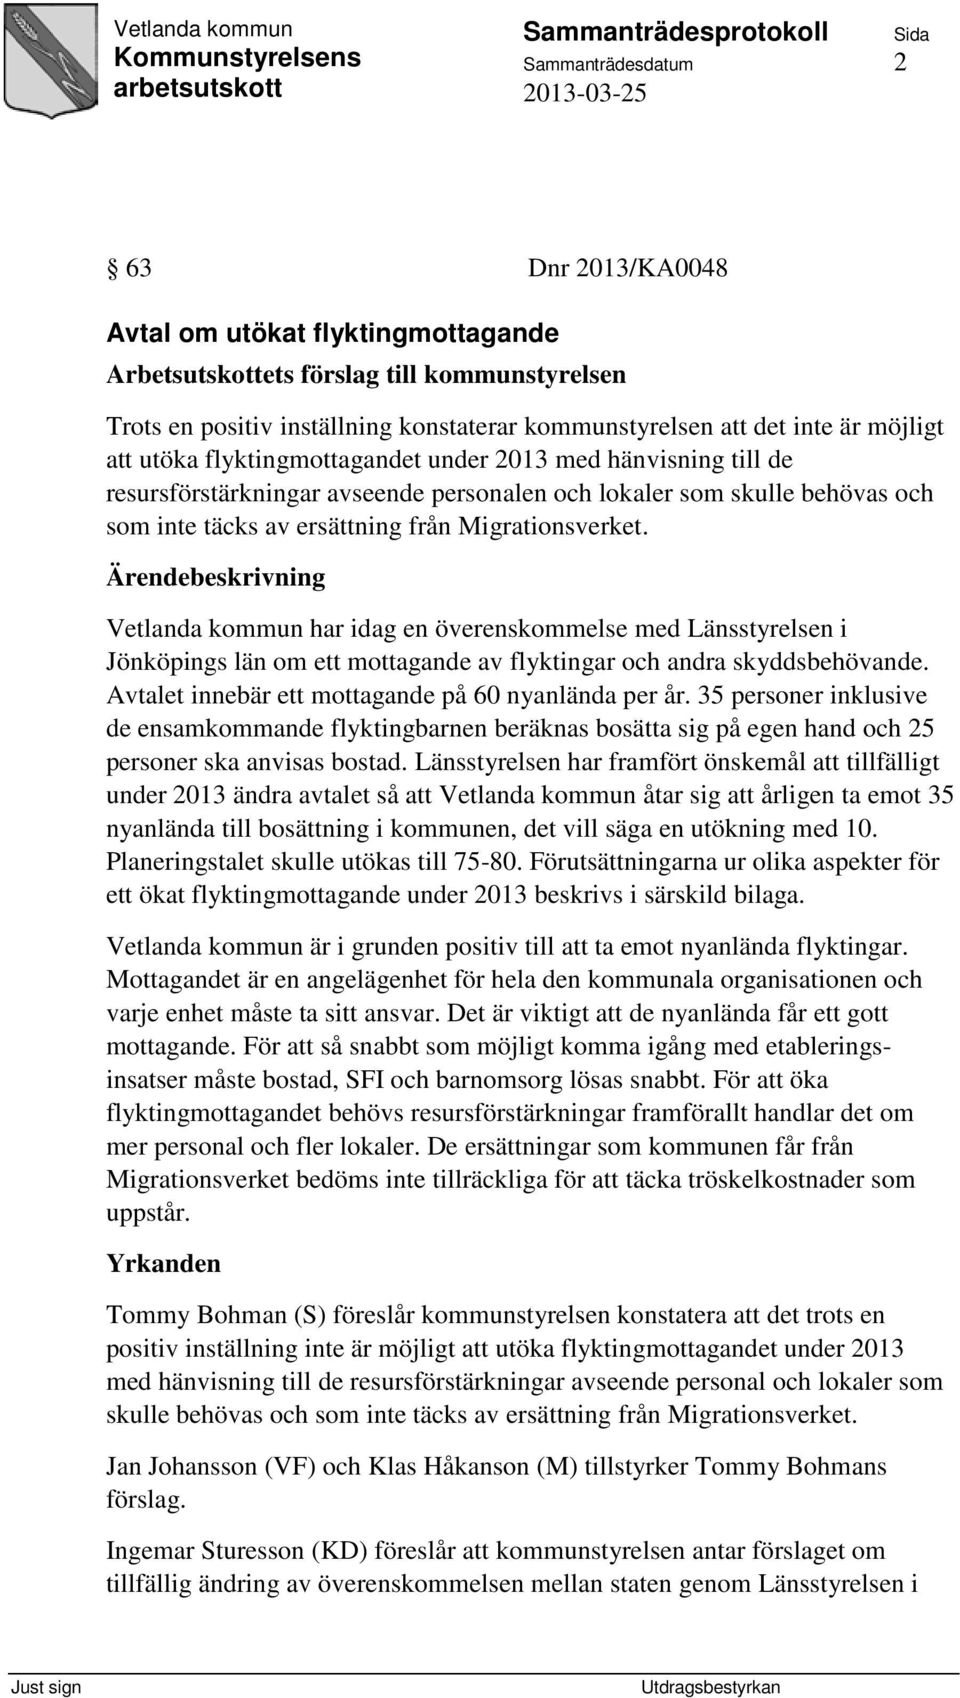 Vetlanda kommun har idag en överenskommelse med Länsstyrelsen i Jönköpings län om ett mottagande av flyktingar och andra skyddsbehövande. Avtalet innebär ett mottagande på 60 nyanlända per år.